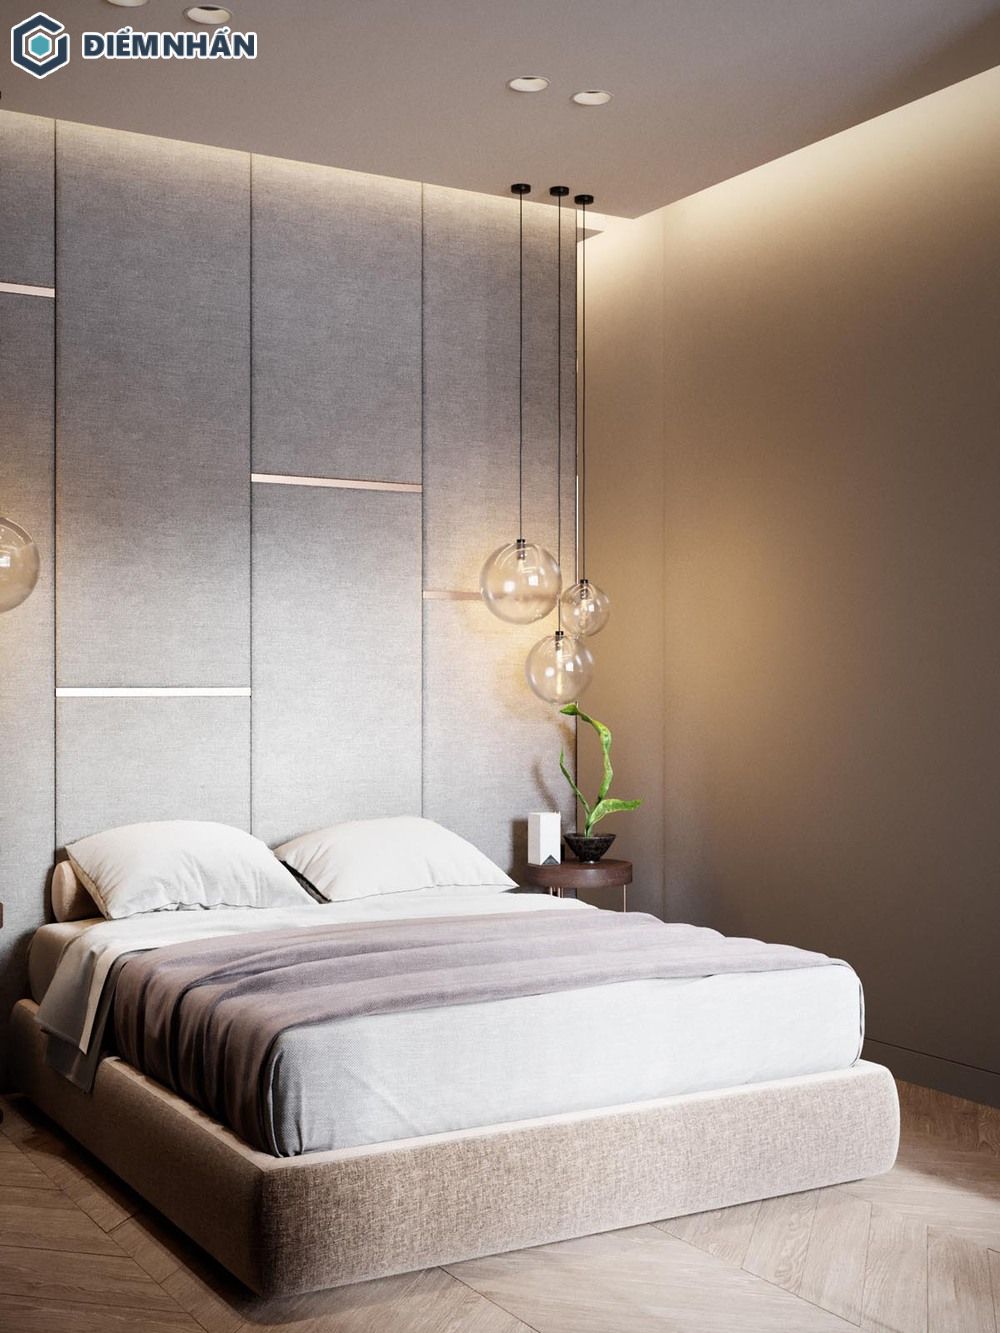 Phòng ngủ bố trí giường đôi được trang trí một cách đơn giản, nhẹ nhàng